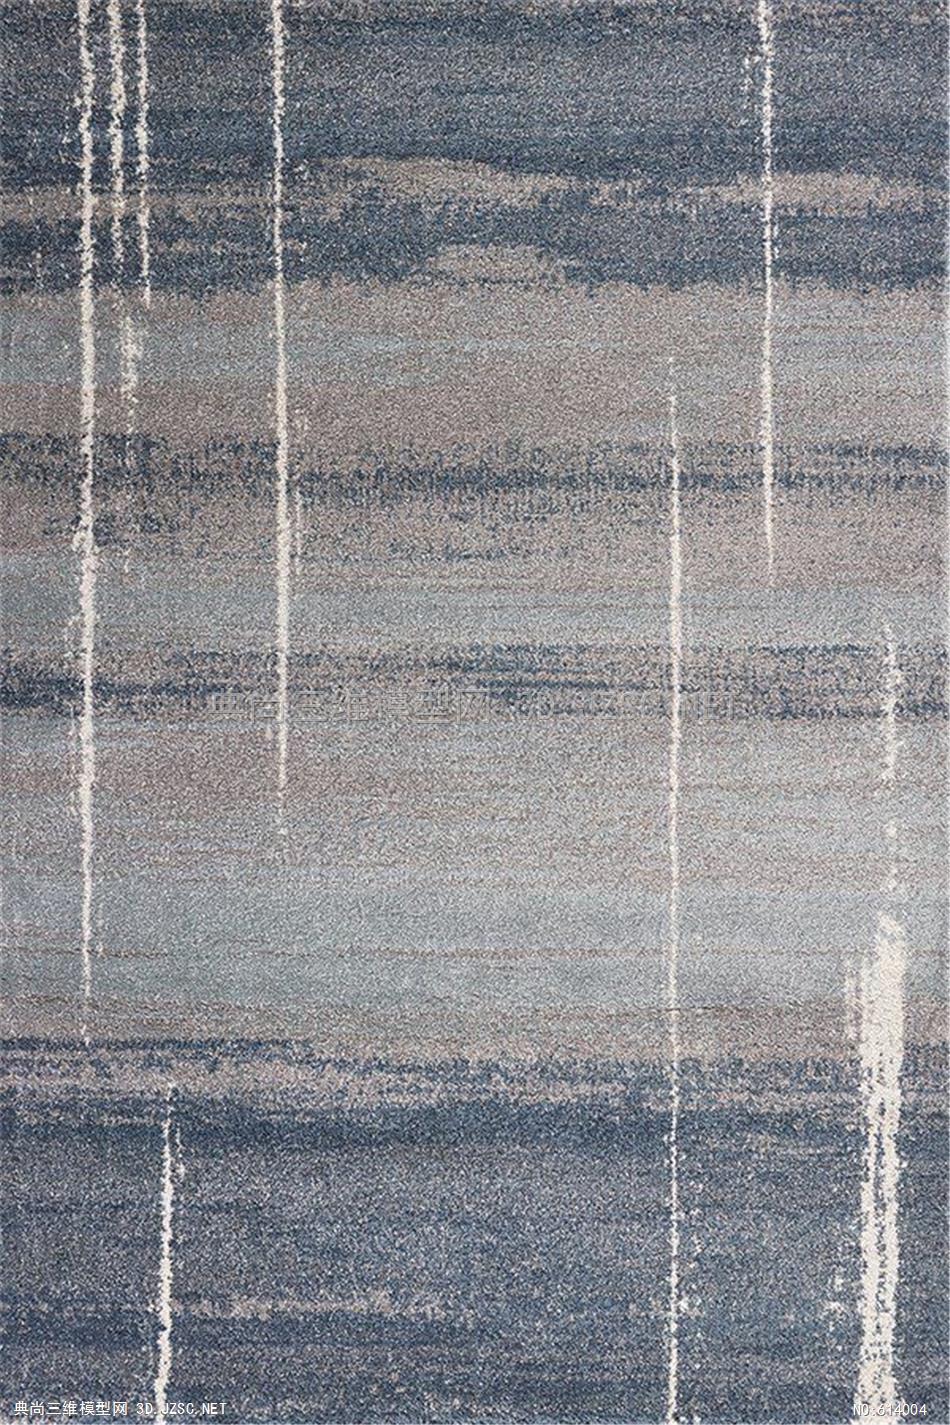 现代时尚地毯壁纸贴图 (41)